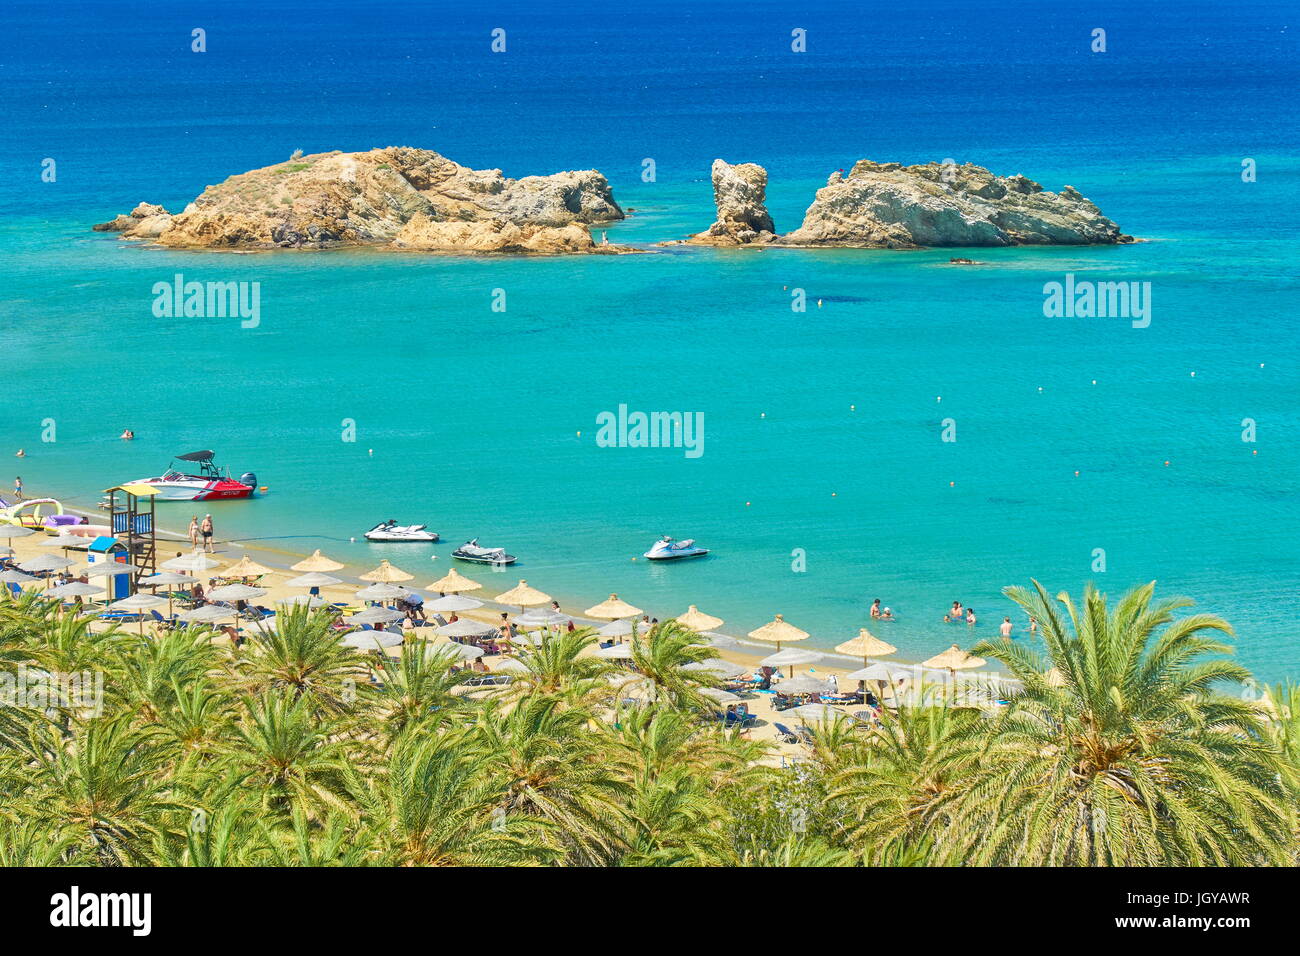 Les touristes sur la plage, l'île de Crète, Grèce Banque D'Images